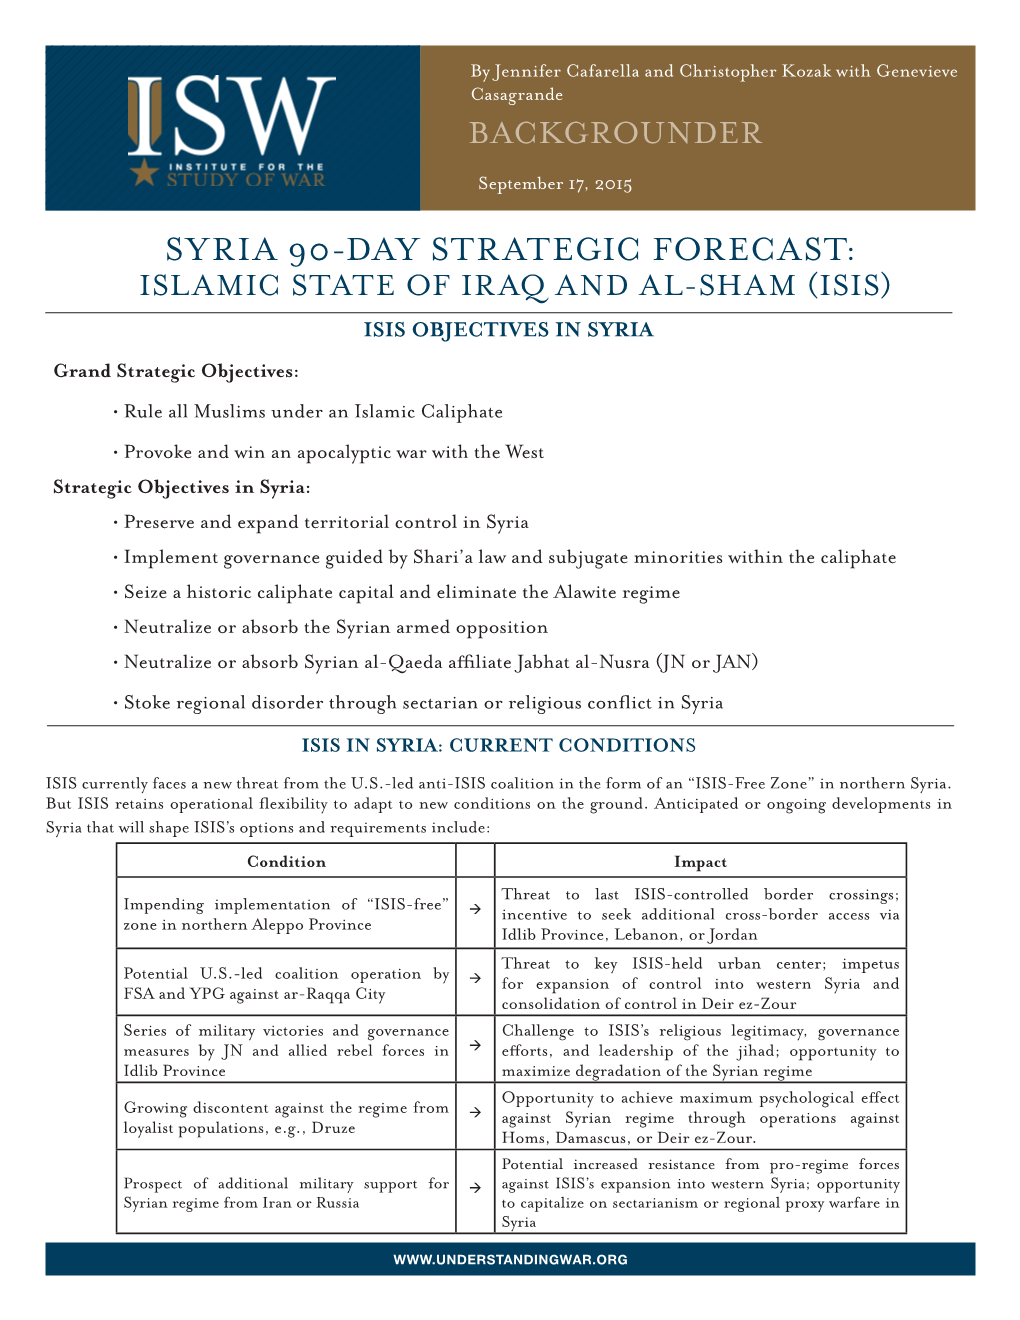 Syria 90-Day Strategic Forecast